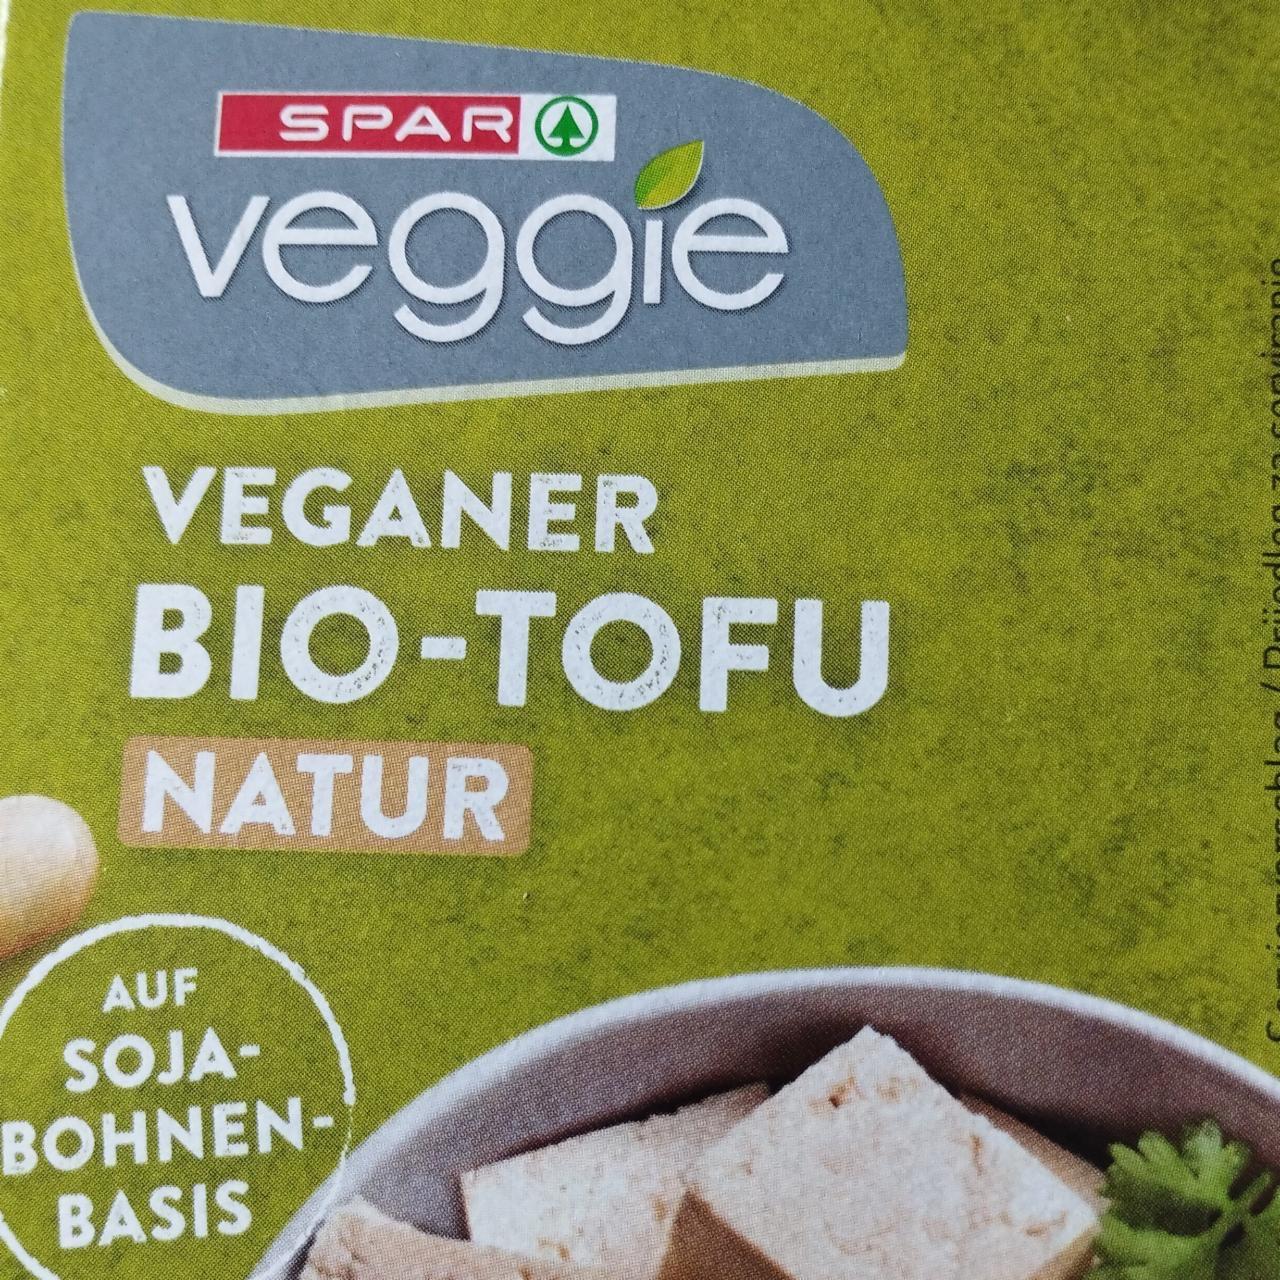 Fotografie - Veganer Bio-Tofu Natur Spar Veggie